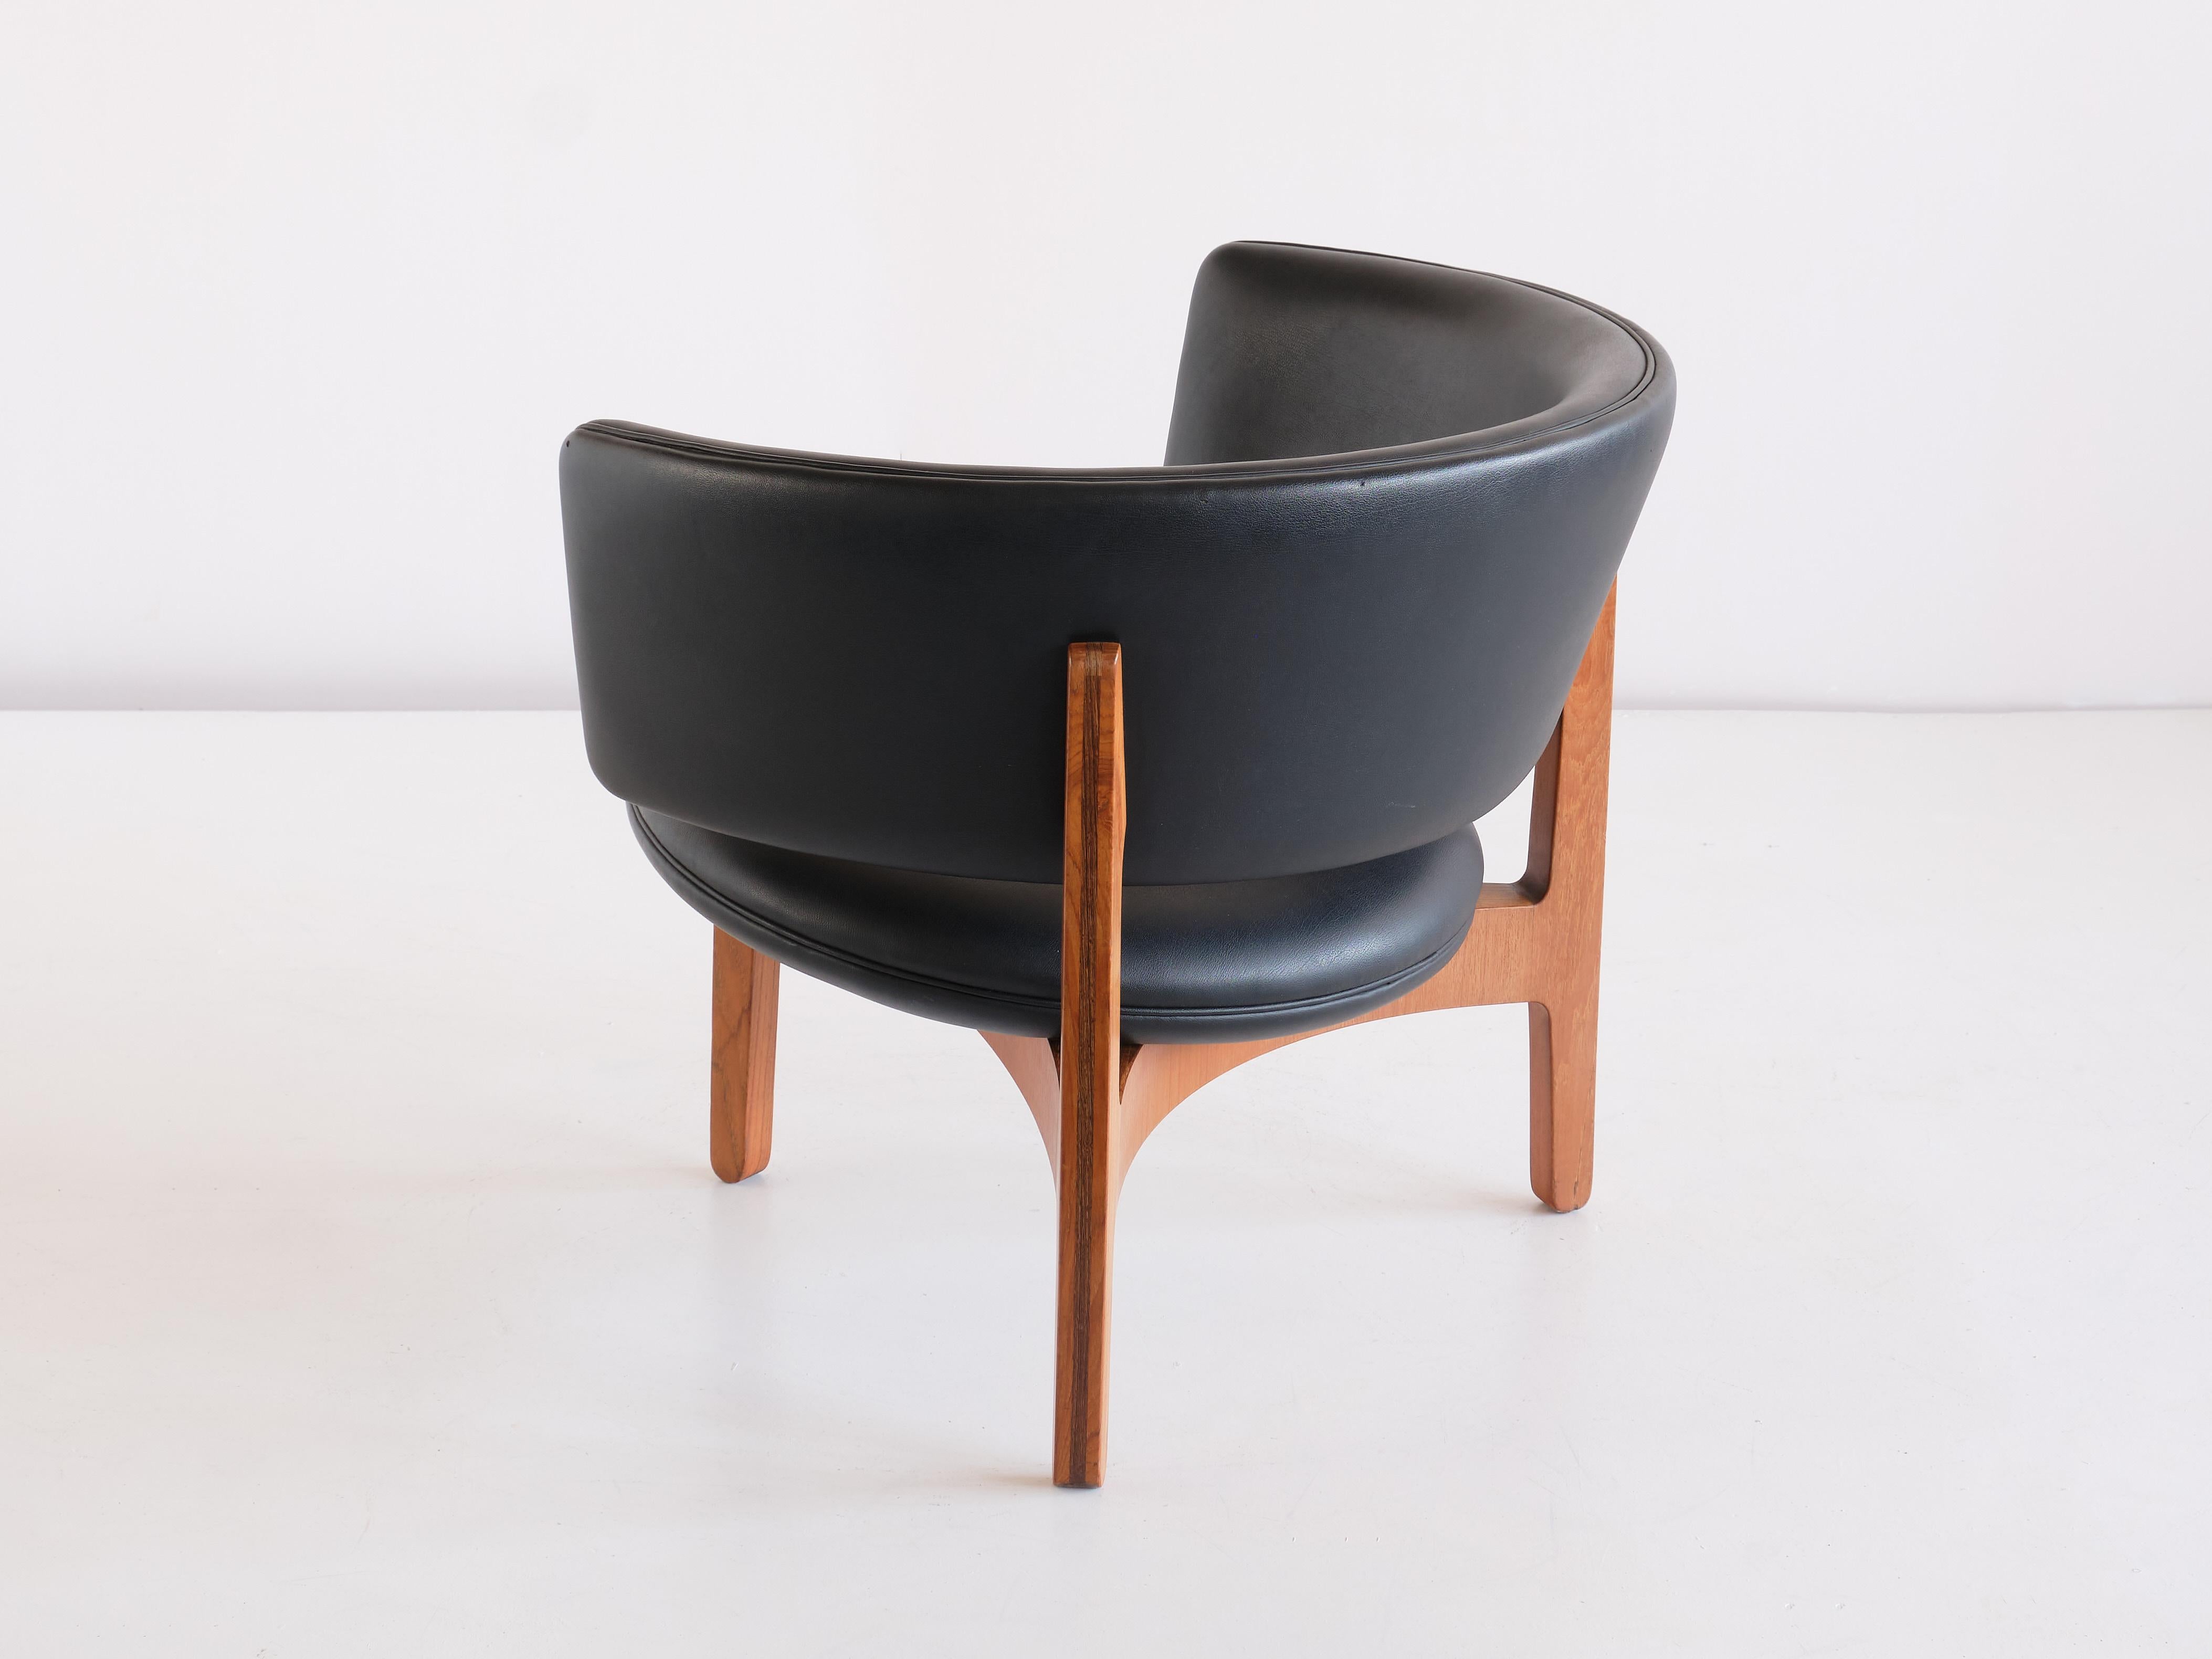 Faux Leather Sven Ellekaer Three Legged Lounge Chair, Christian Linneberg, Denmark, 1962 For Sale